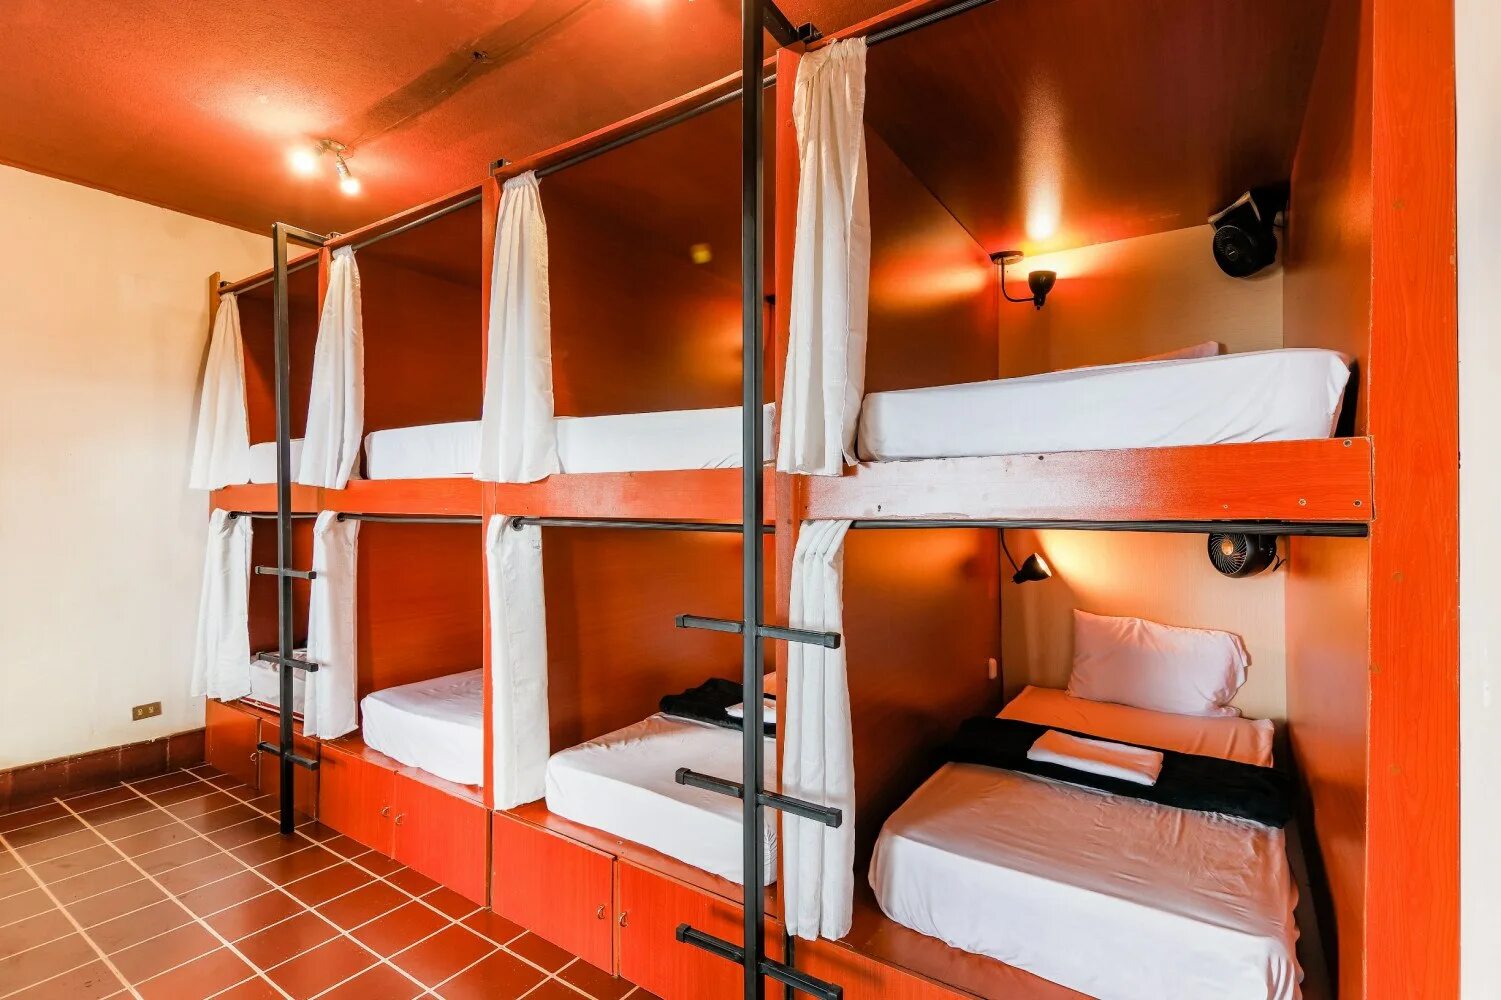 Капсульный хостел МСК. Двухъярусные кровати для хостелов. Капсульные кровати для хостела. Капсулы для хостела. Название общежития